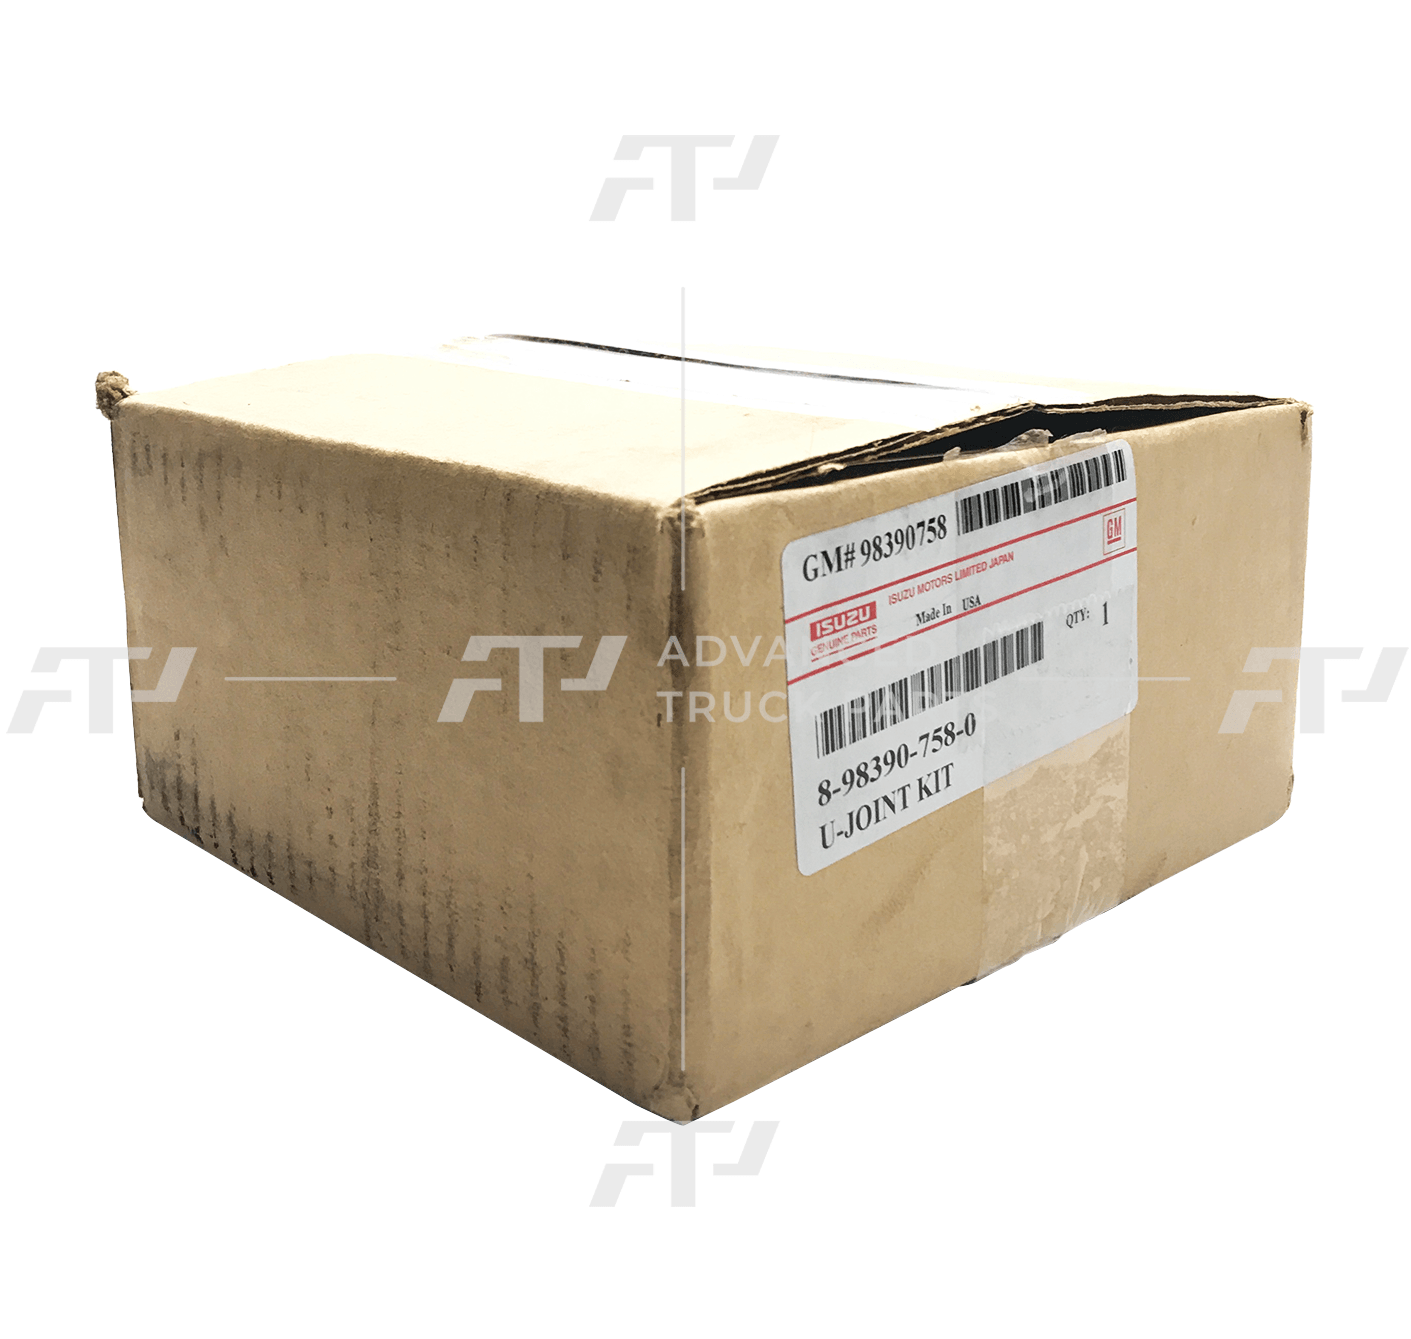 8-98390-758-0 Genuine Isuzu U-Joint Kit - ADVANCED TRUCK PARTS